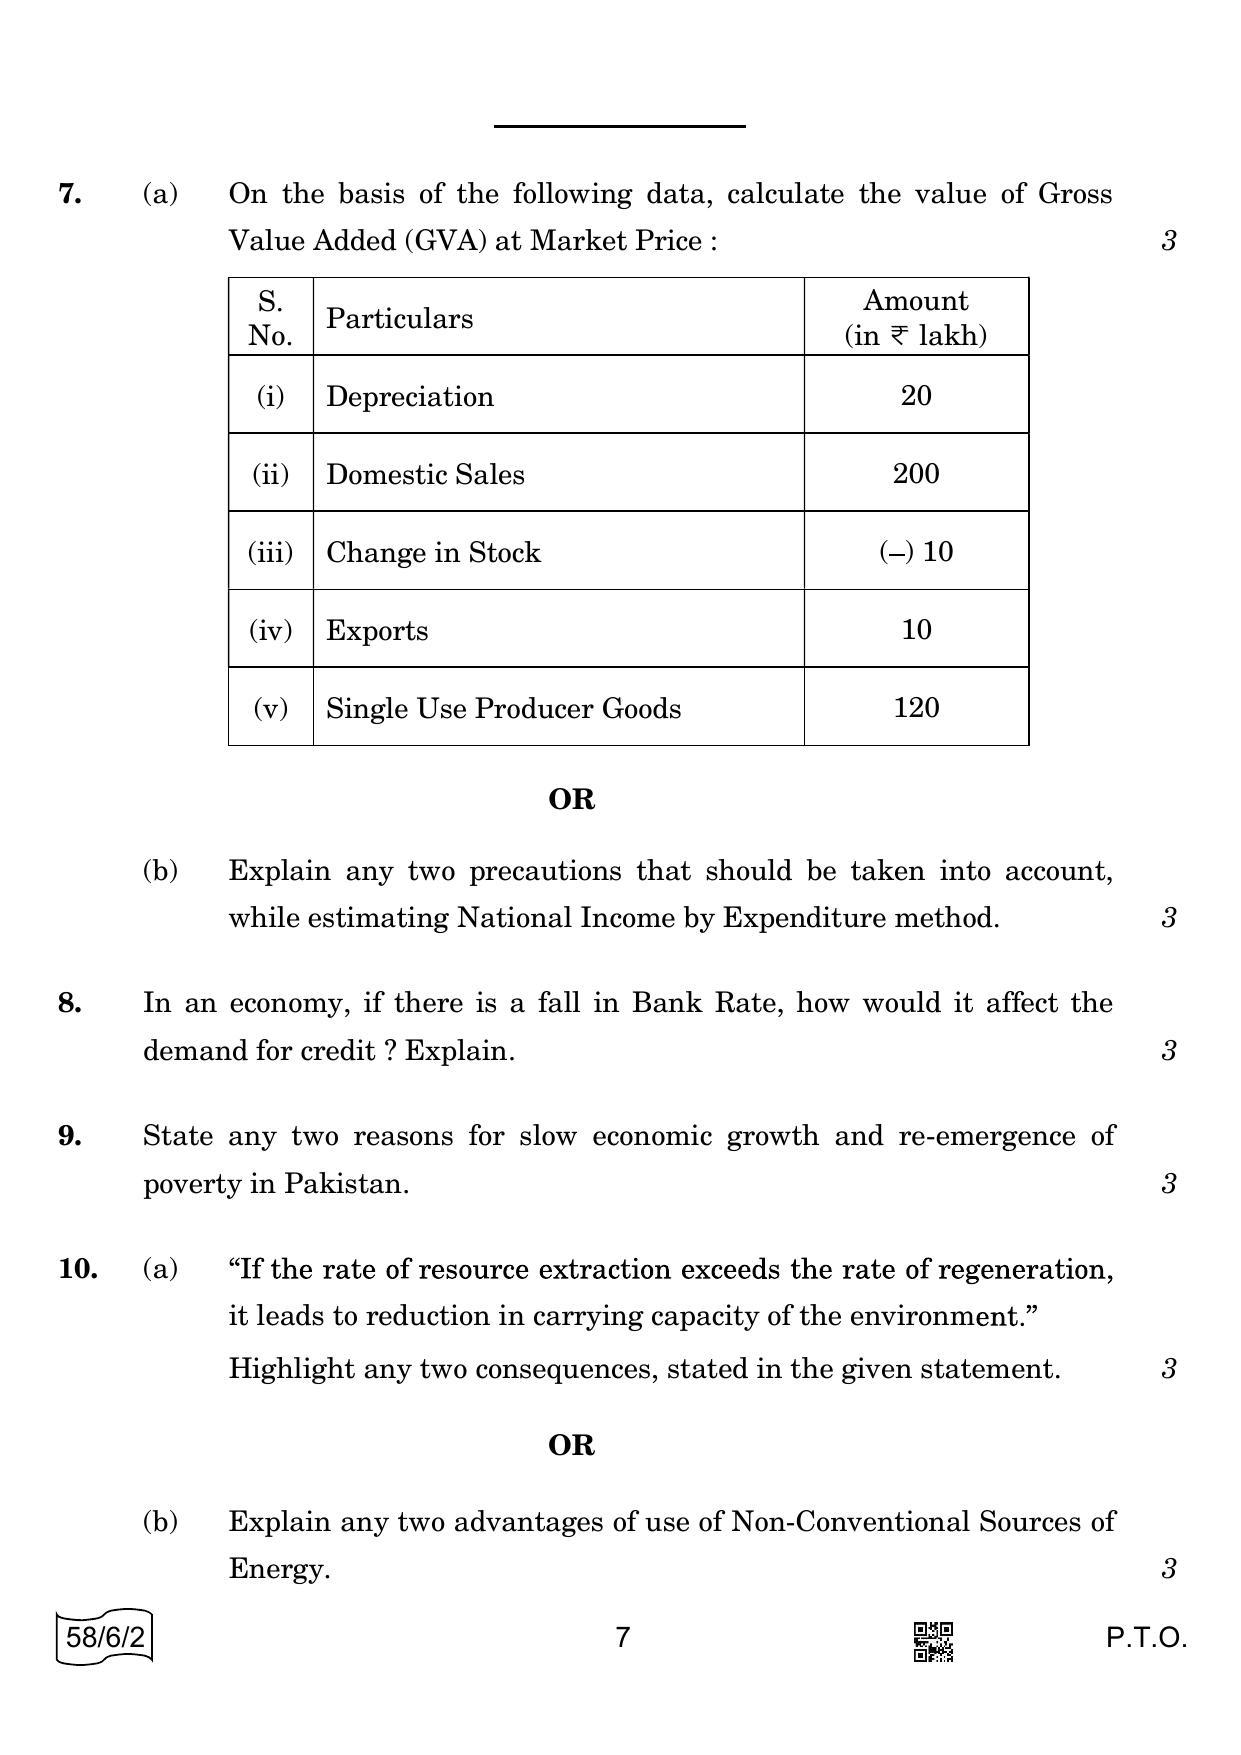 CBSE Class 12 58-6-2 ECONOMICS 2022 Compartment Question Paper - Page 7